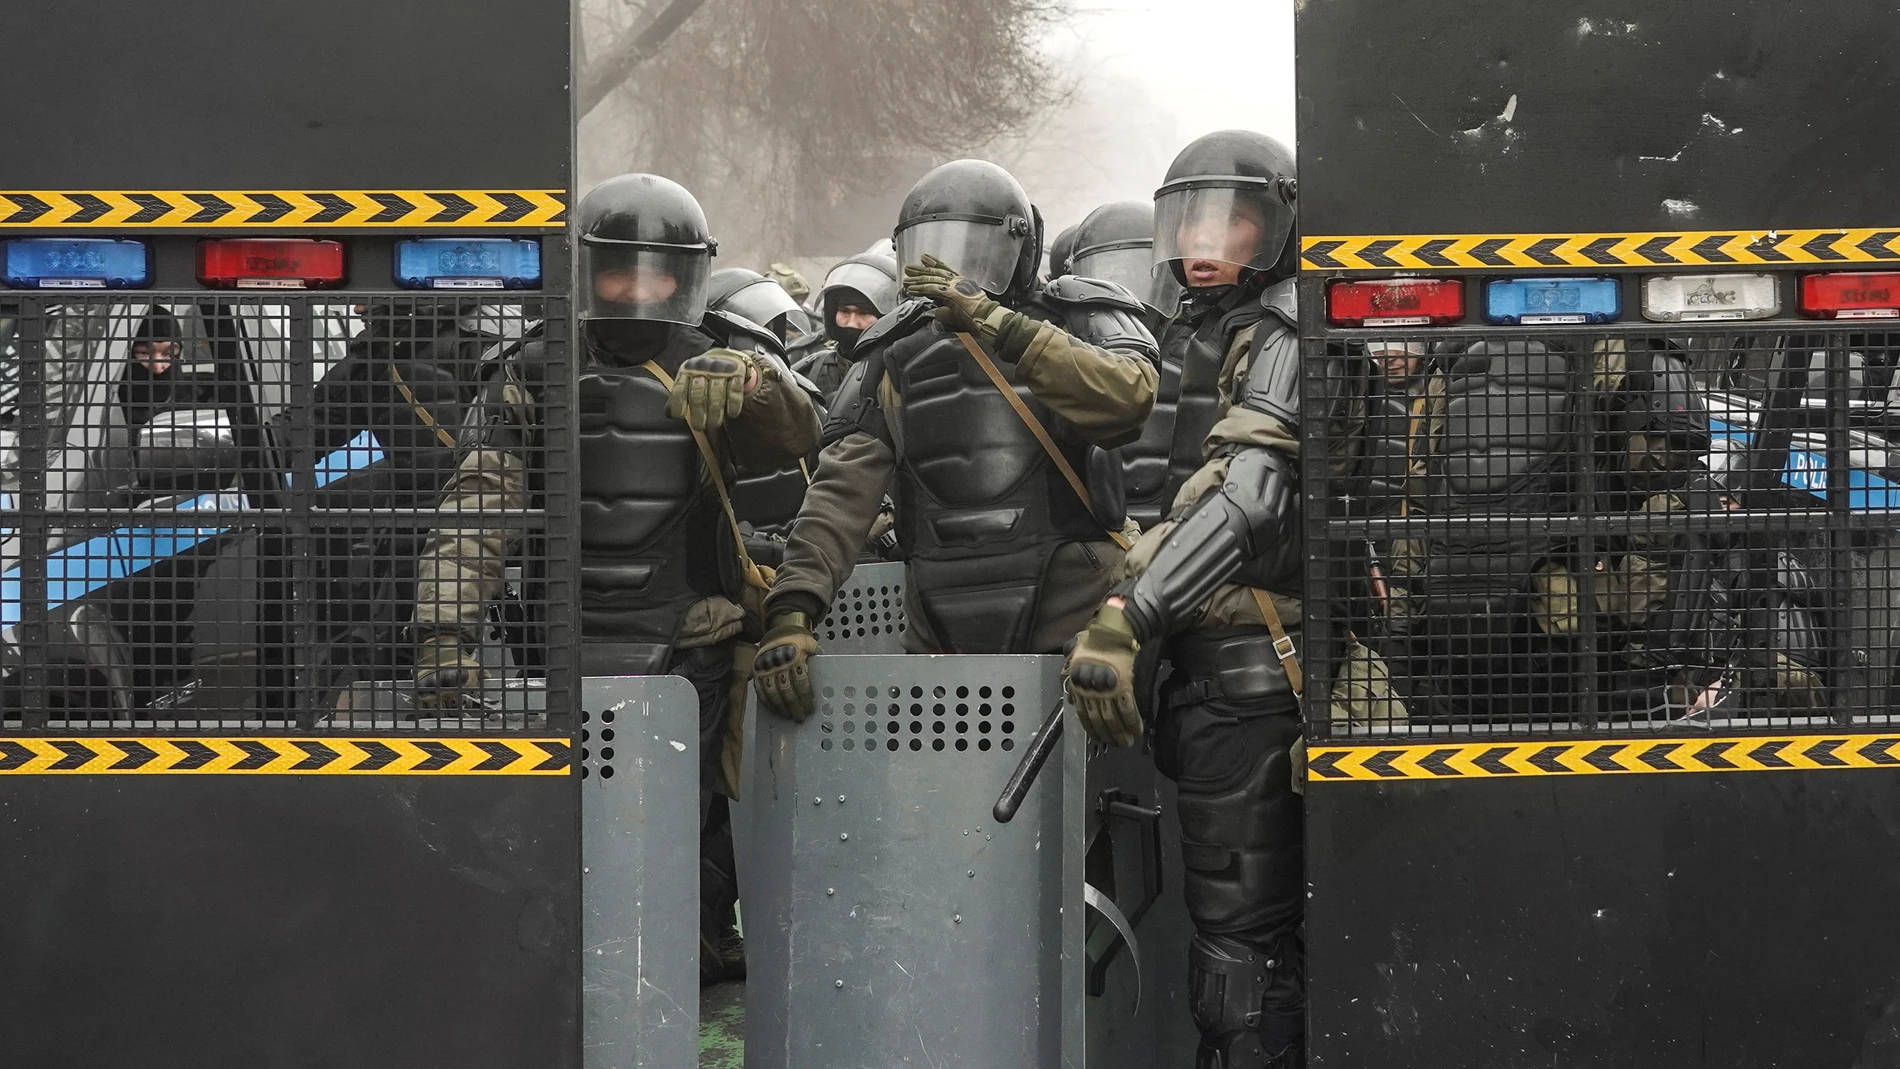 -FOTODELDÍA- Almaty (Kazakhstan), 05/01/2022.- Policías antidisturbios vigilan una calle durante las manifestaciones por la subida de los precios de la energía en Almaty, Kazajstán.- EFE/STR